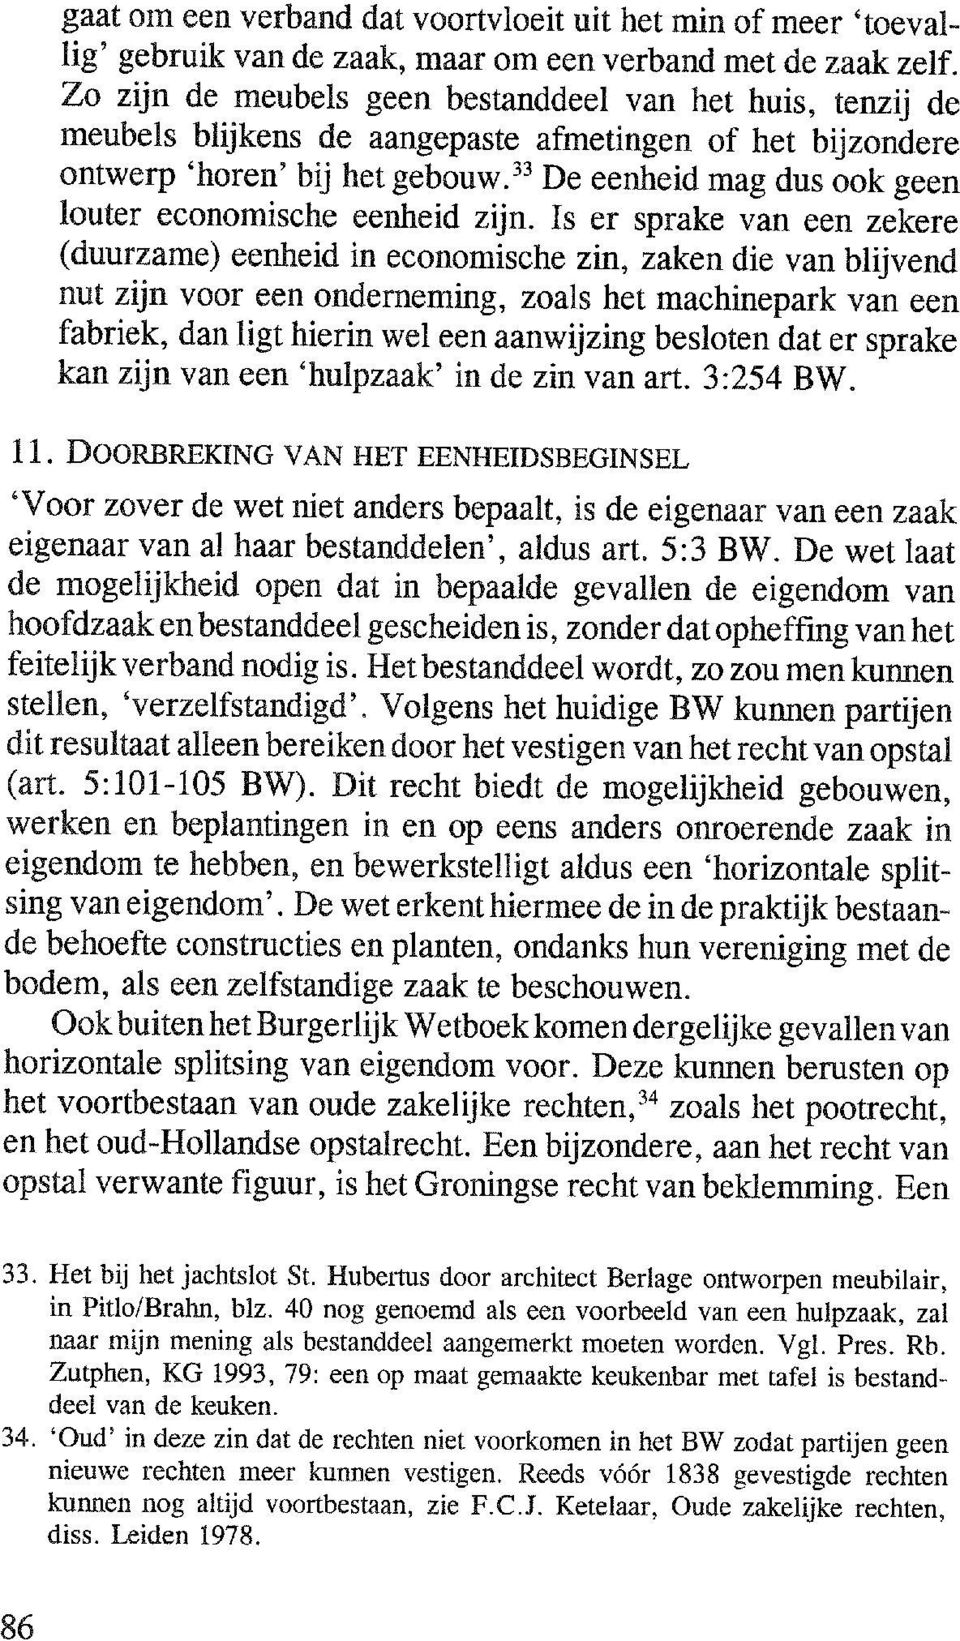 Zutphen, KG 1993, 79: een op maat gemaakte keukenbar met tafel is bestanddeel van de keuken. 34.